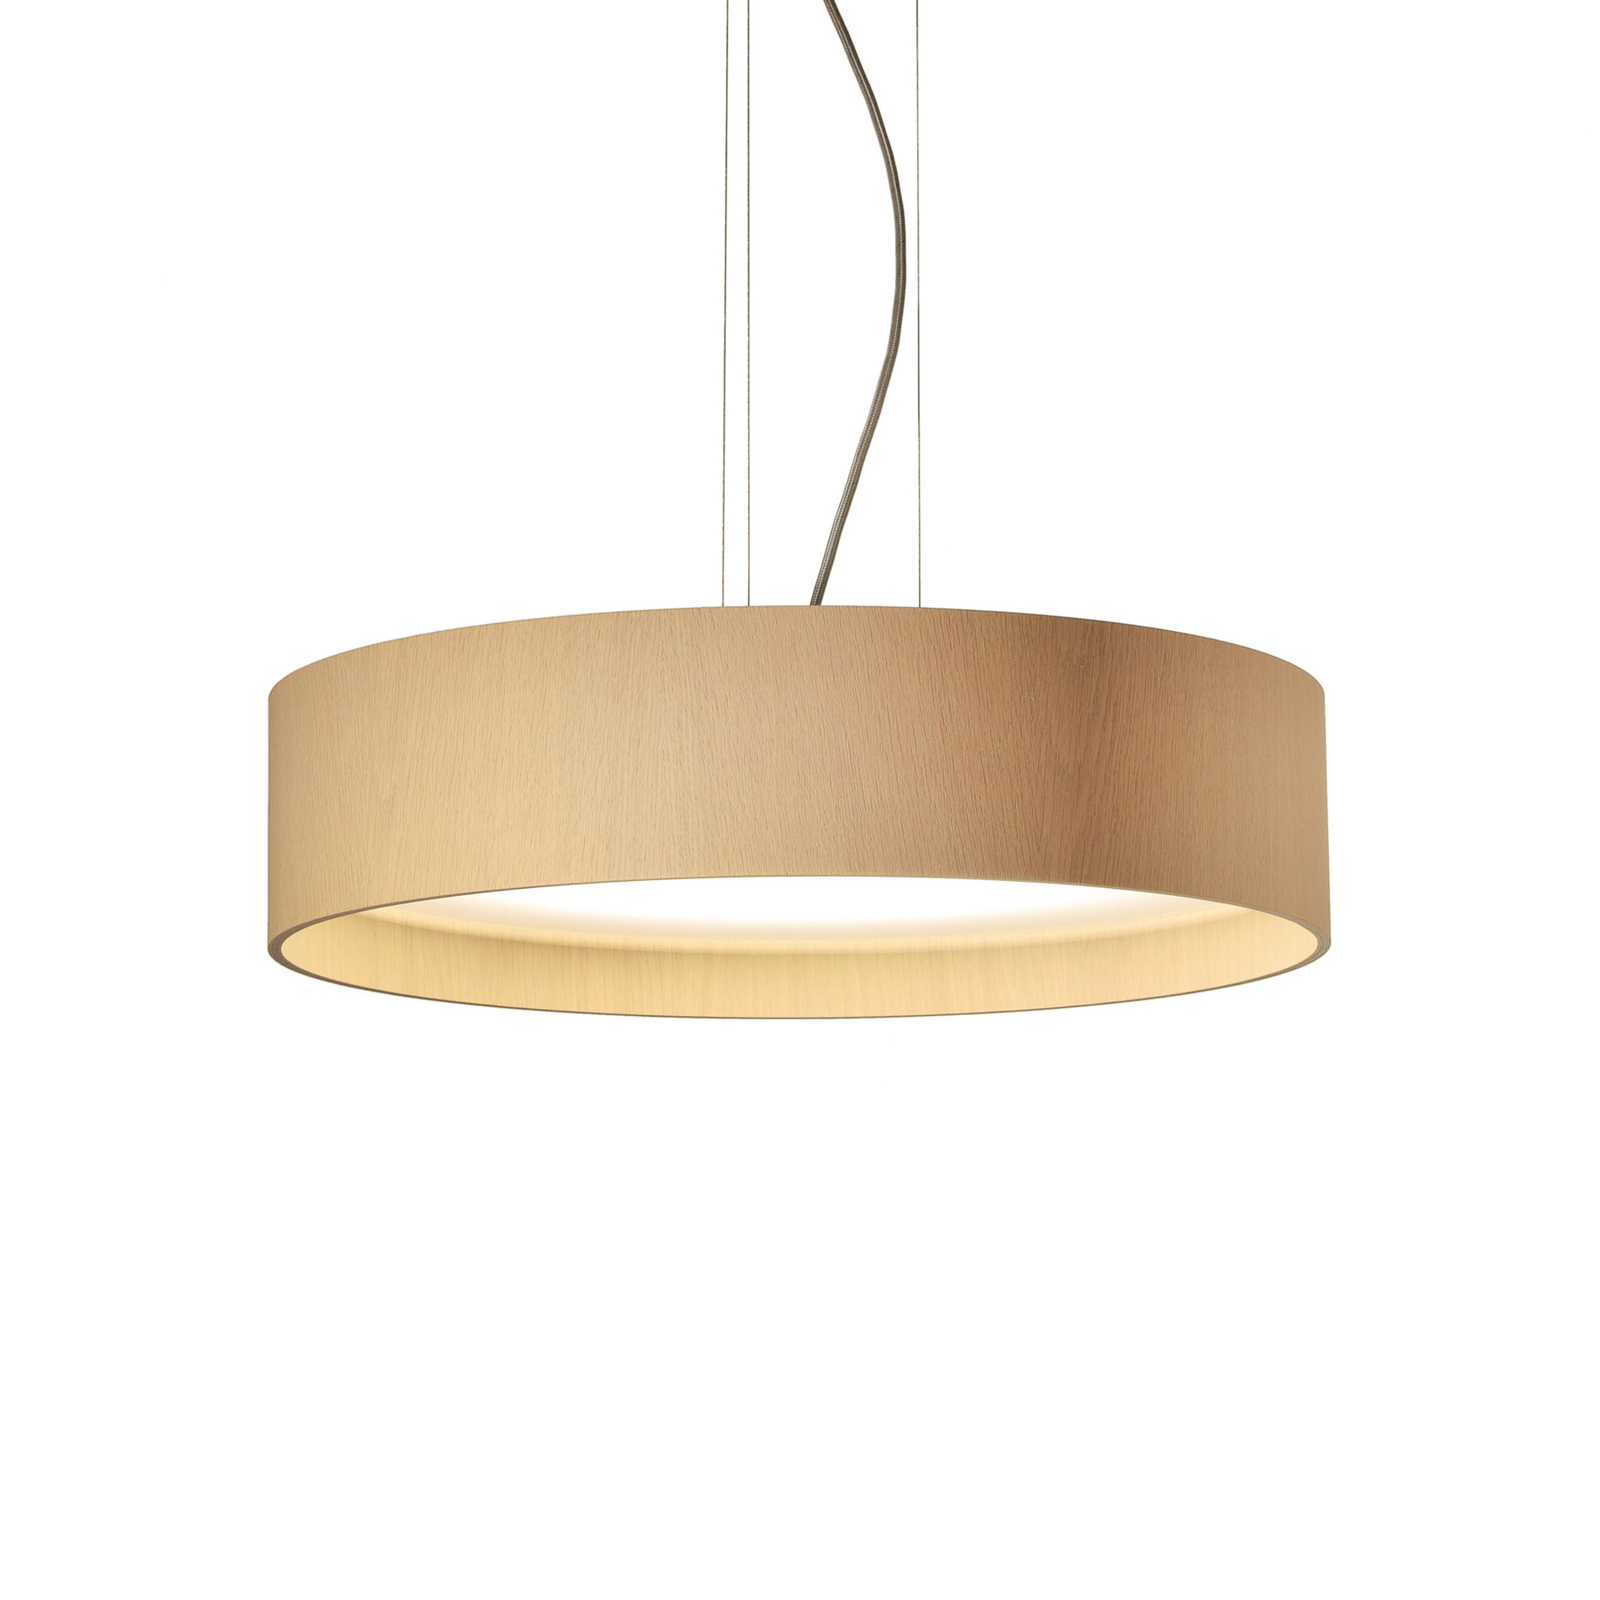 LED pendant light LARAwood L, white oak, Ø 55 cm